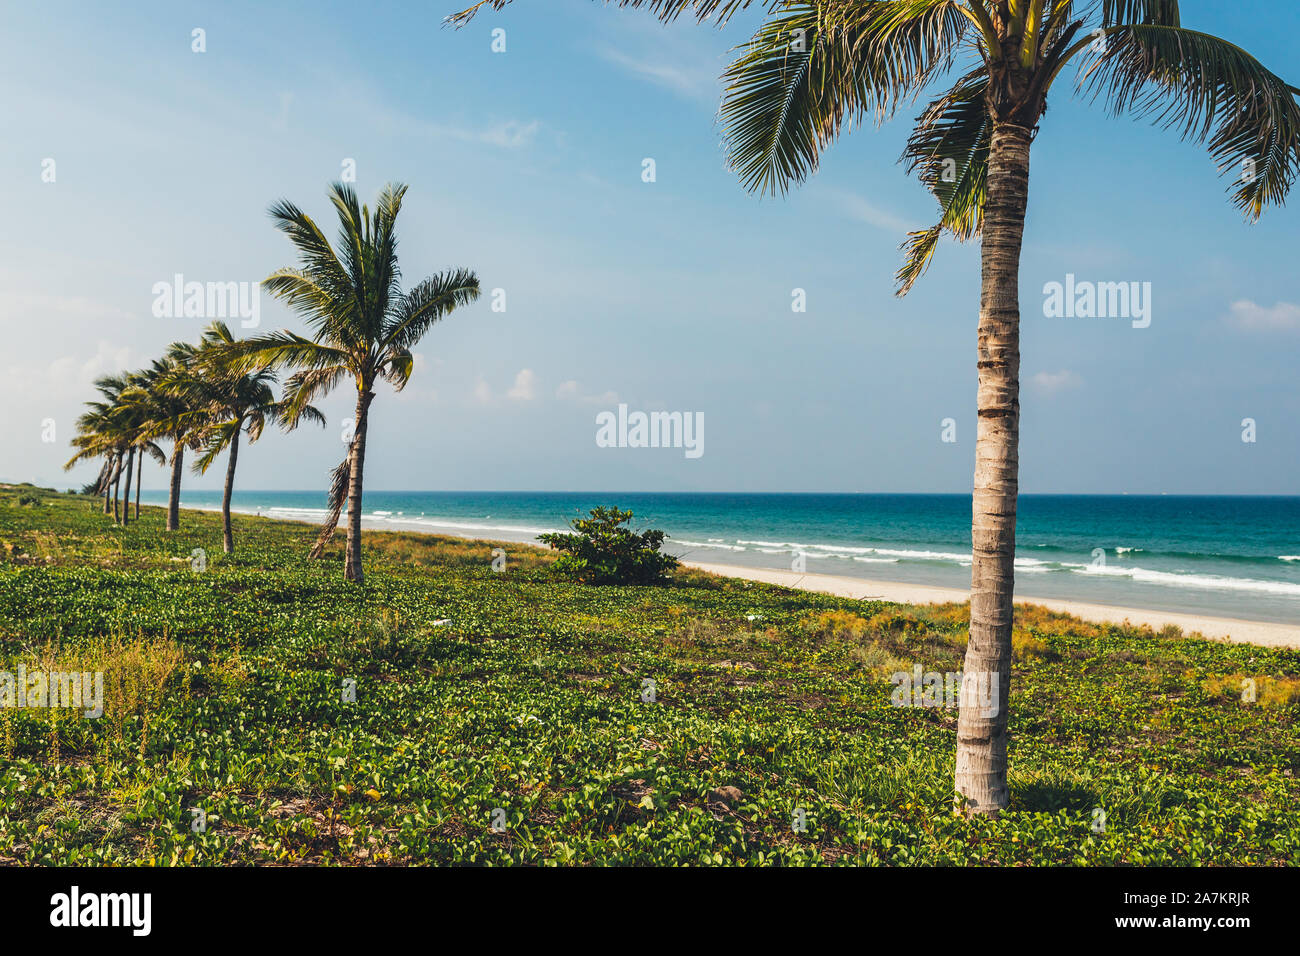 Palme da cocco sulla riva del mare blu, in una giornata di sole con il bianco delle nuvole nel cielo, isola, un luogo per rilassarsi Foto Stock